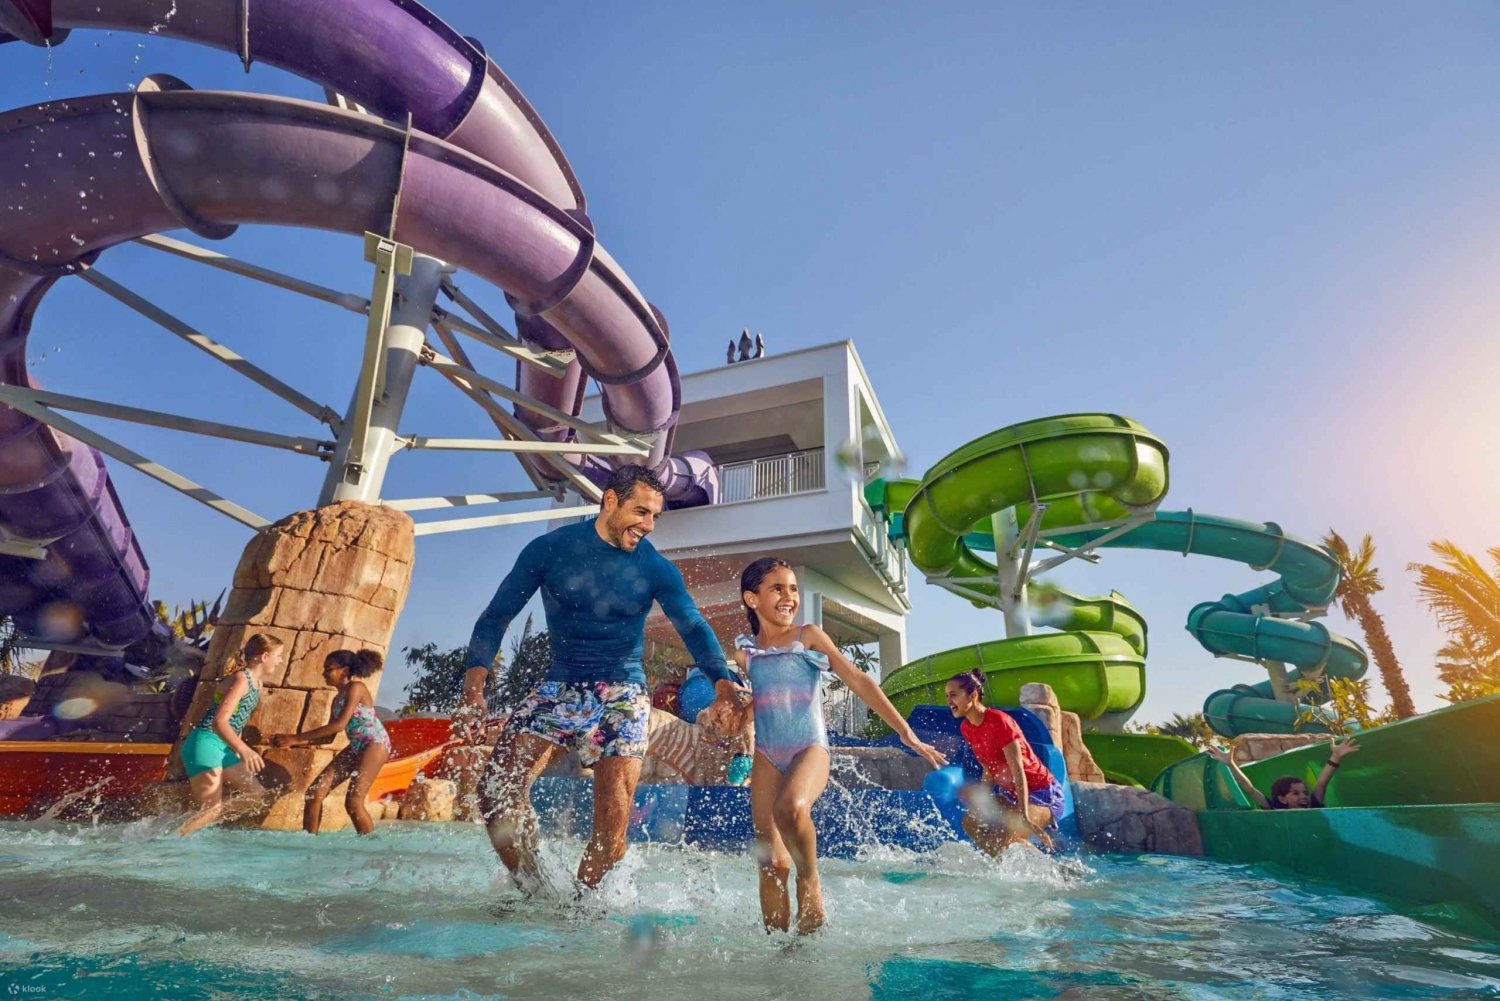 Dubai: Biljett till Atlantis Aquaventure Park med privat transfer